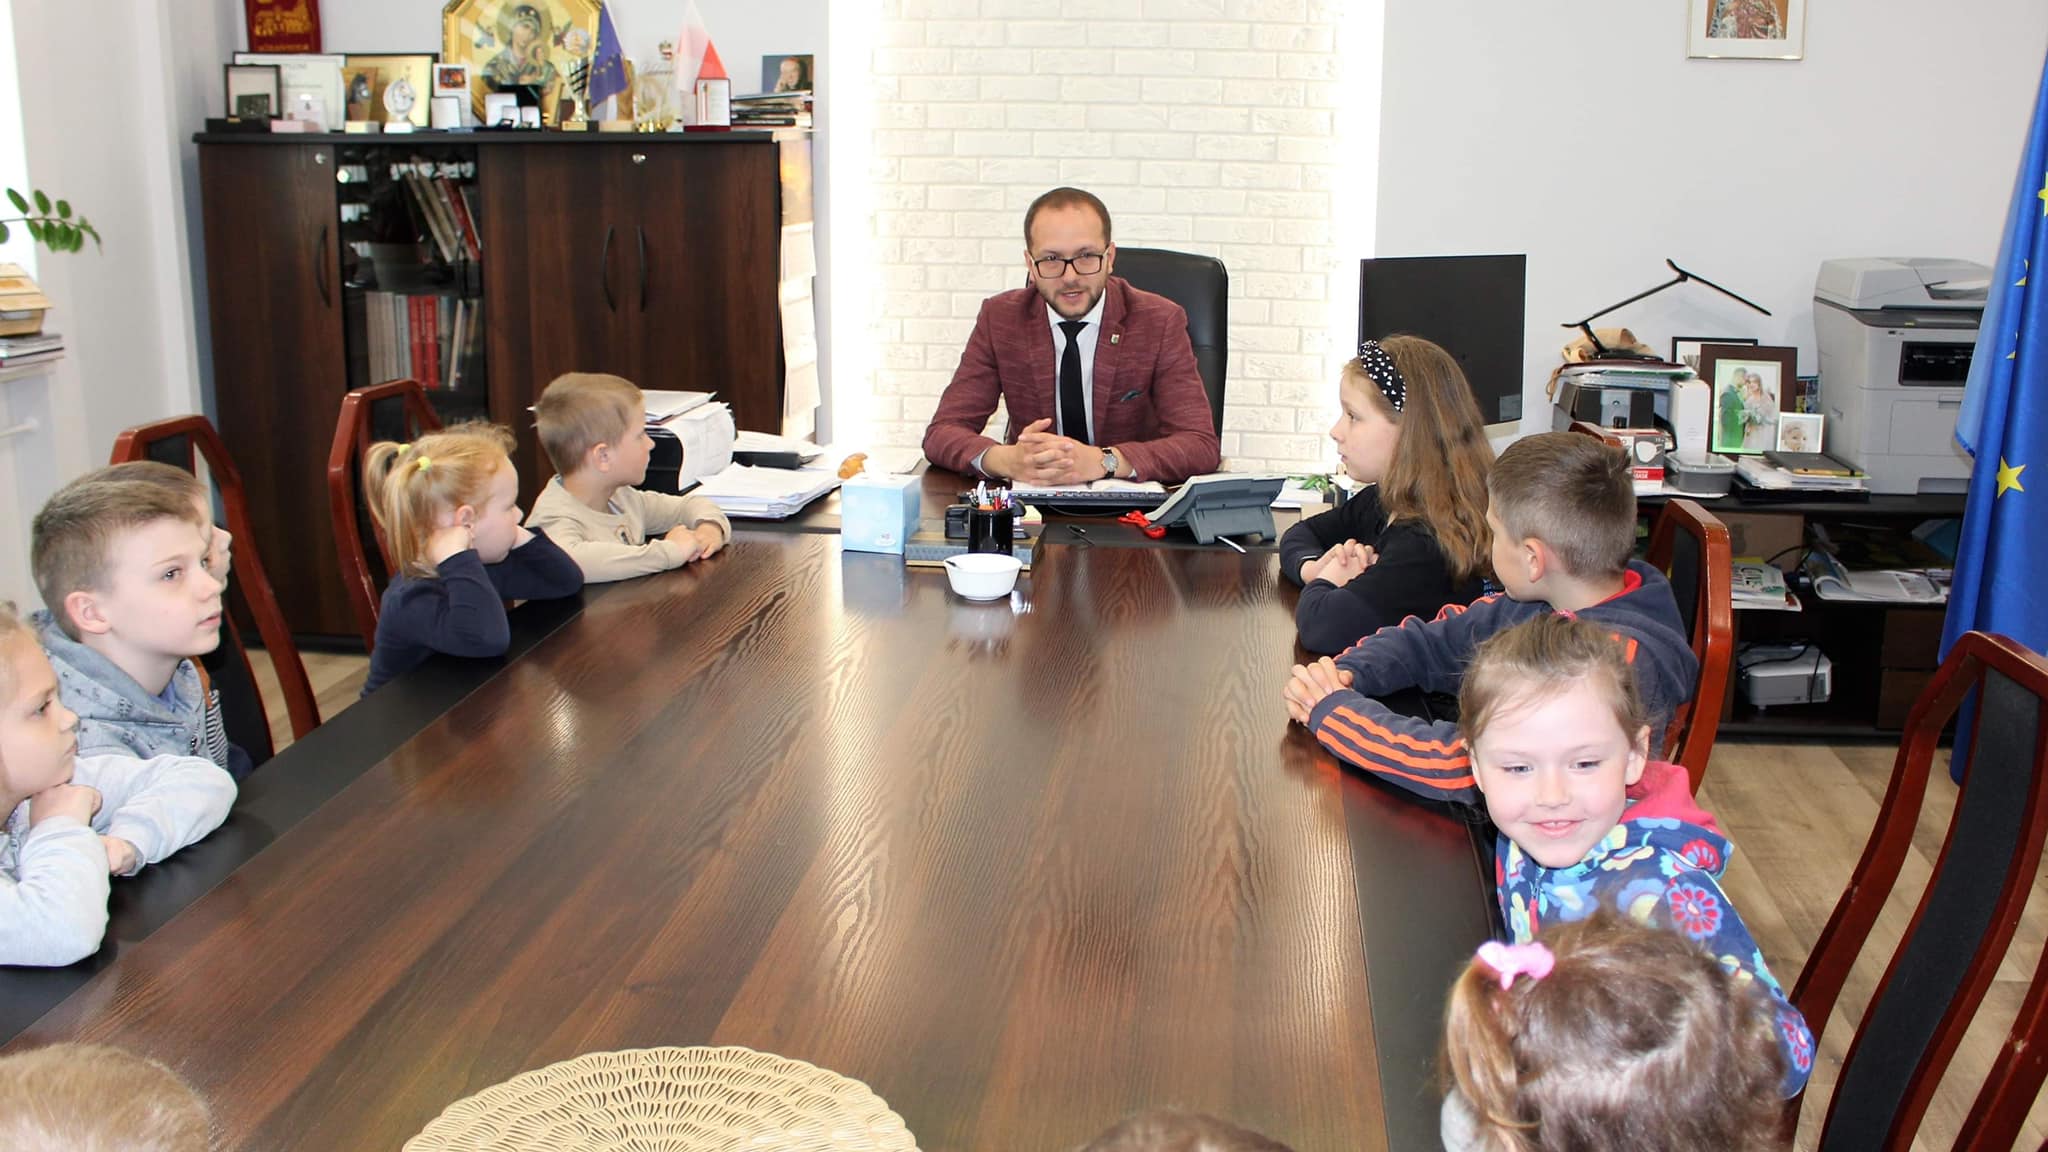 burmistrz w gabinecie z uczniami siedzi przy stole